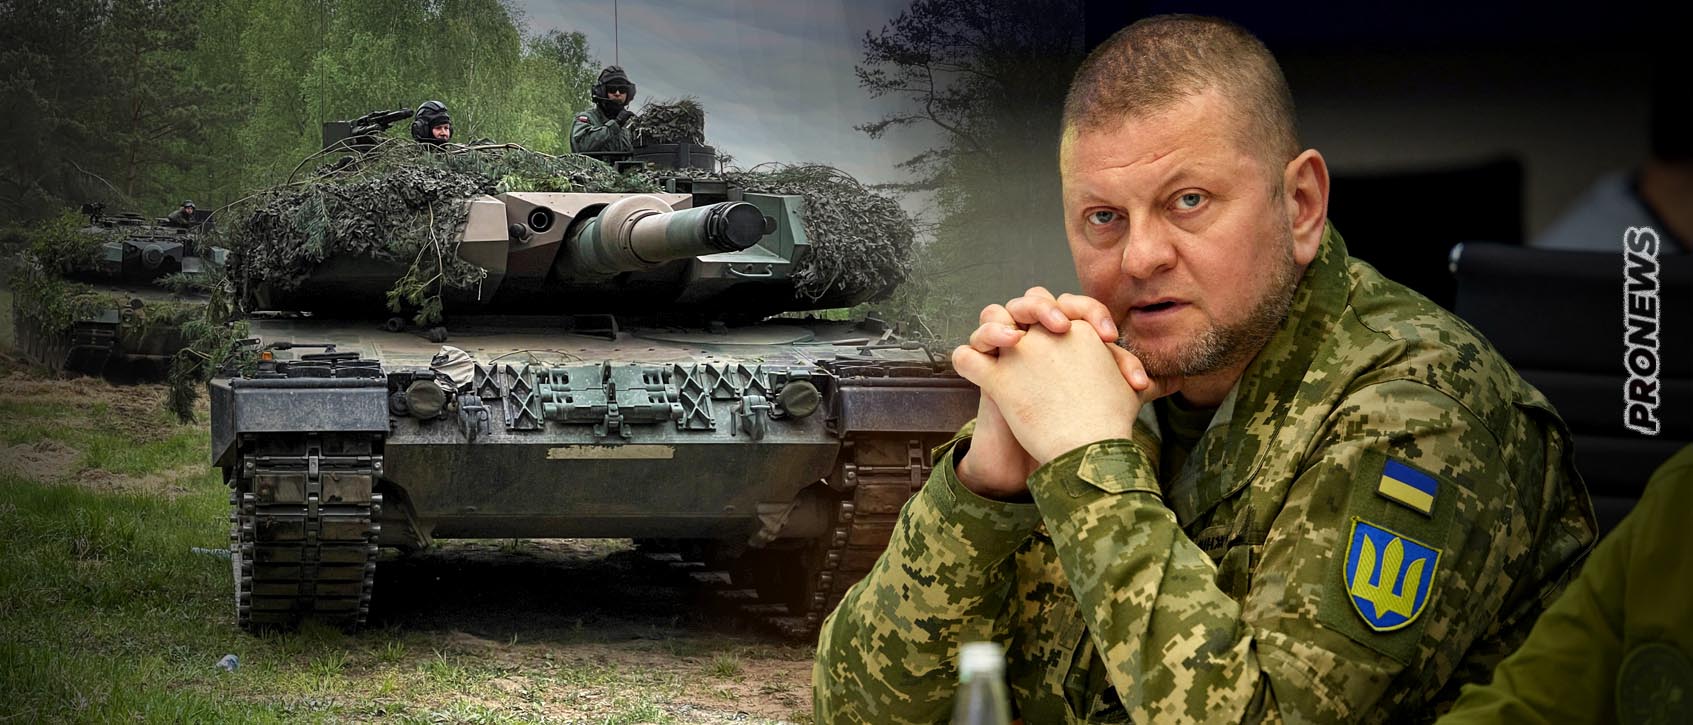 Επιβεβαιώνει ο Β.Ζαλούζνι: «Οι ουκρανικές δυνάμεις έχουν αποχωρήσει από την Μαρίνκα»